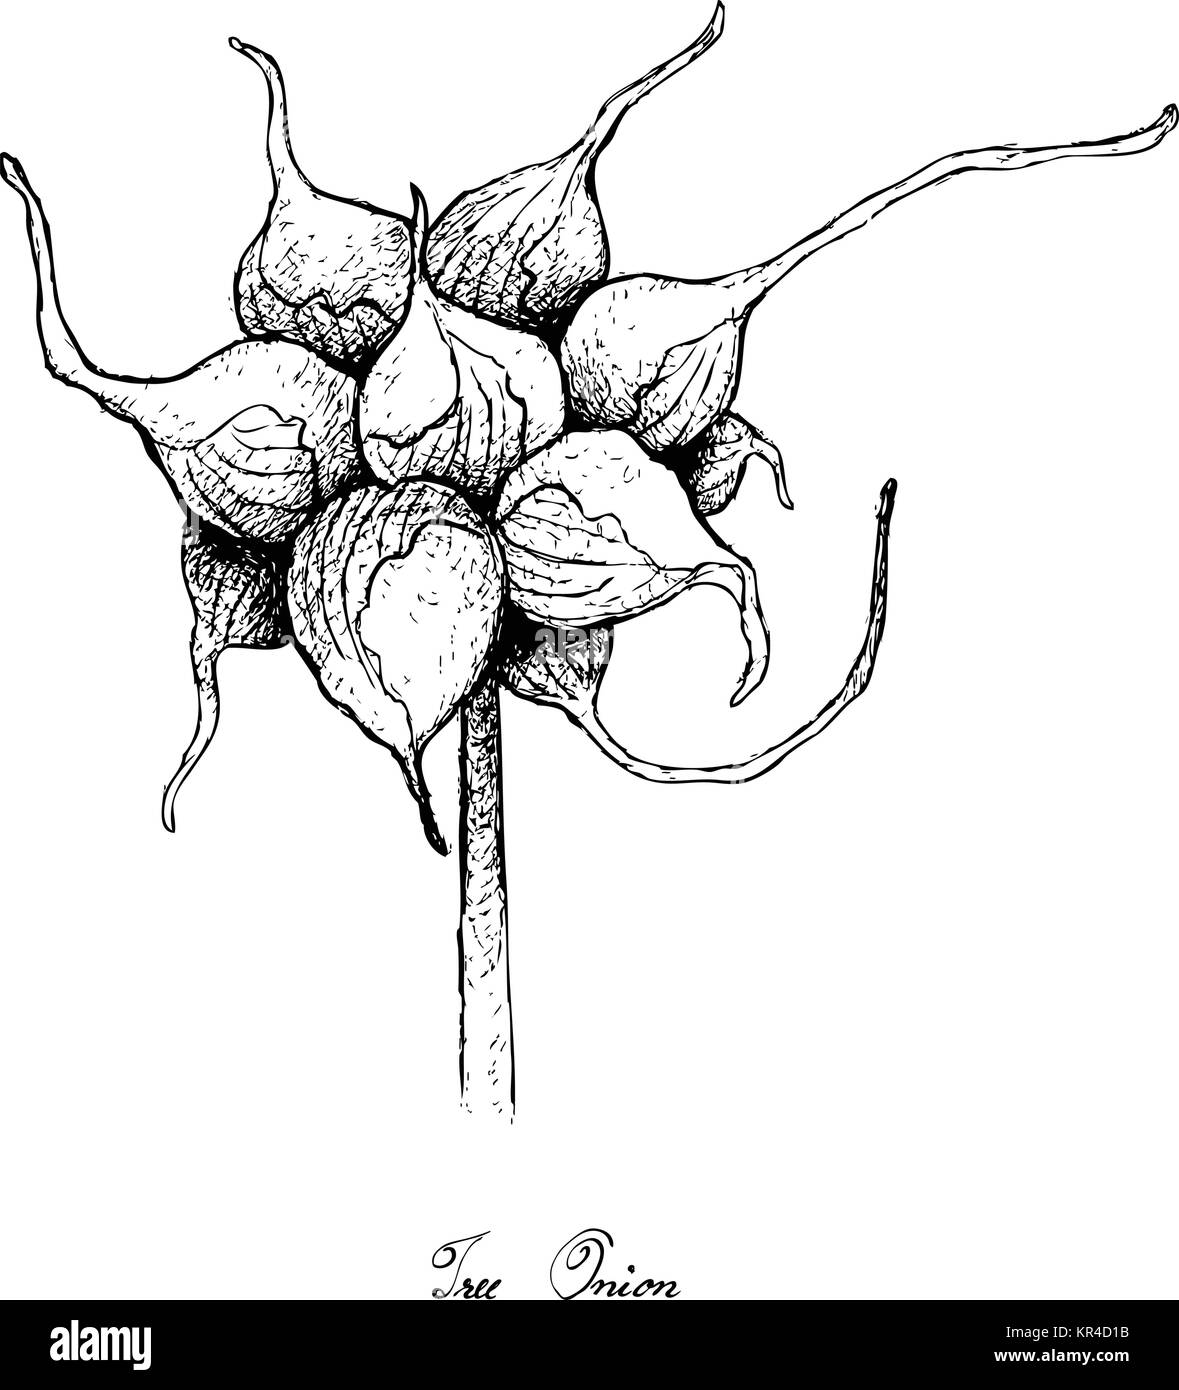 Glühlampe Gemüse, Illustration Hand gezeichnete Skizze frischen Baum Zwiebeln oder Lauch Proliferum zum Würzen in der Küche. Auf weissem Hintergrund. Stock Vektor